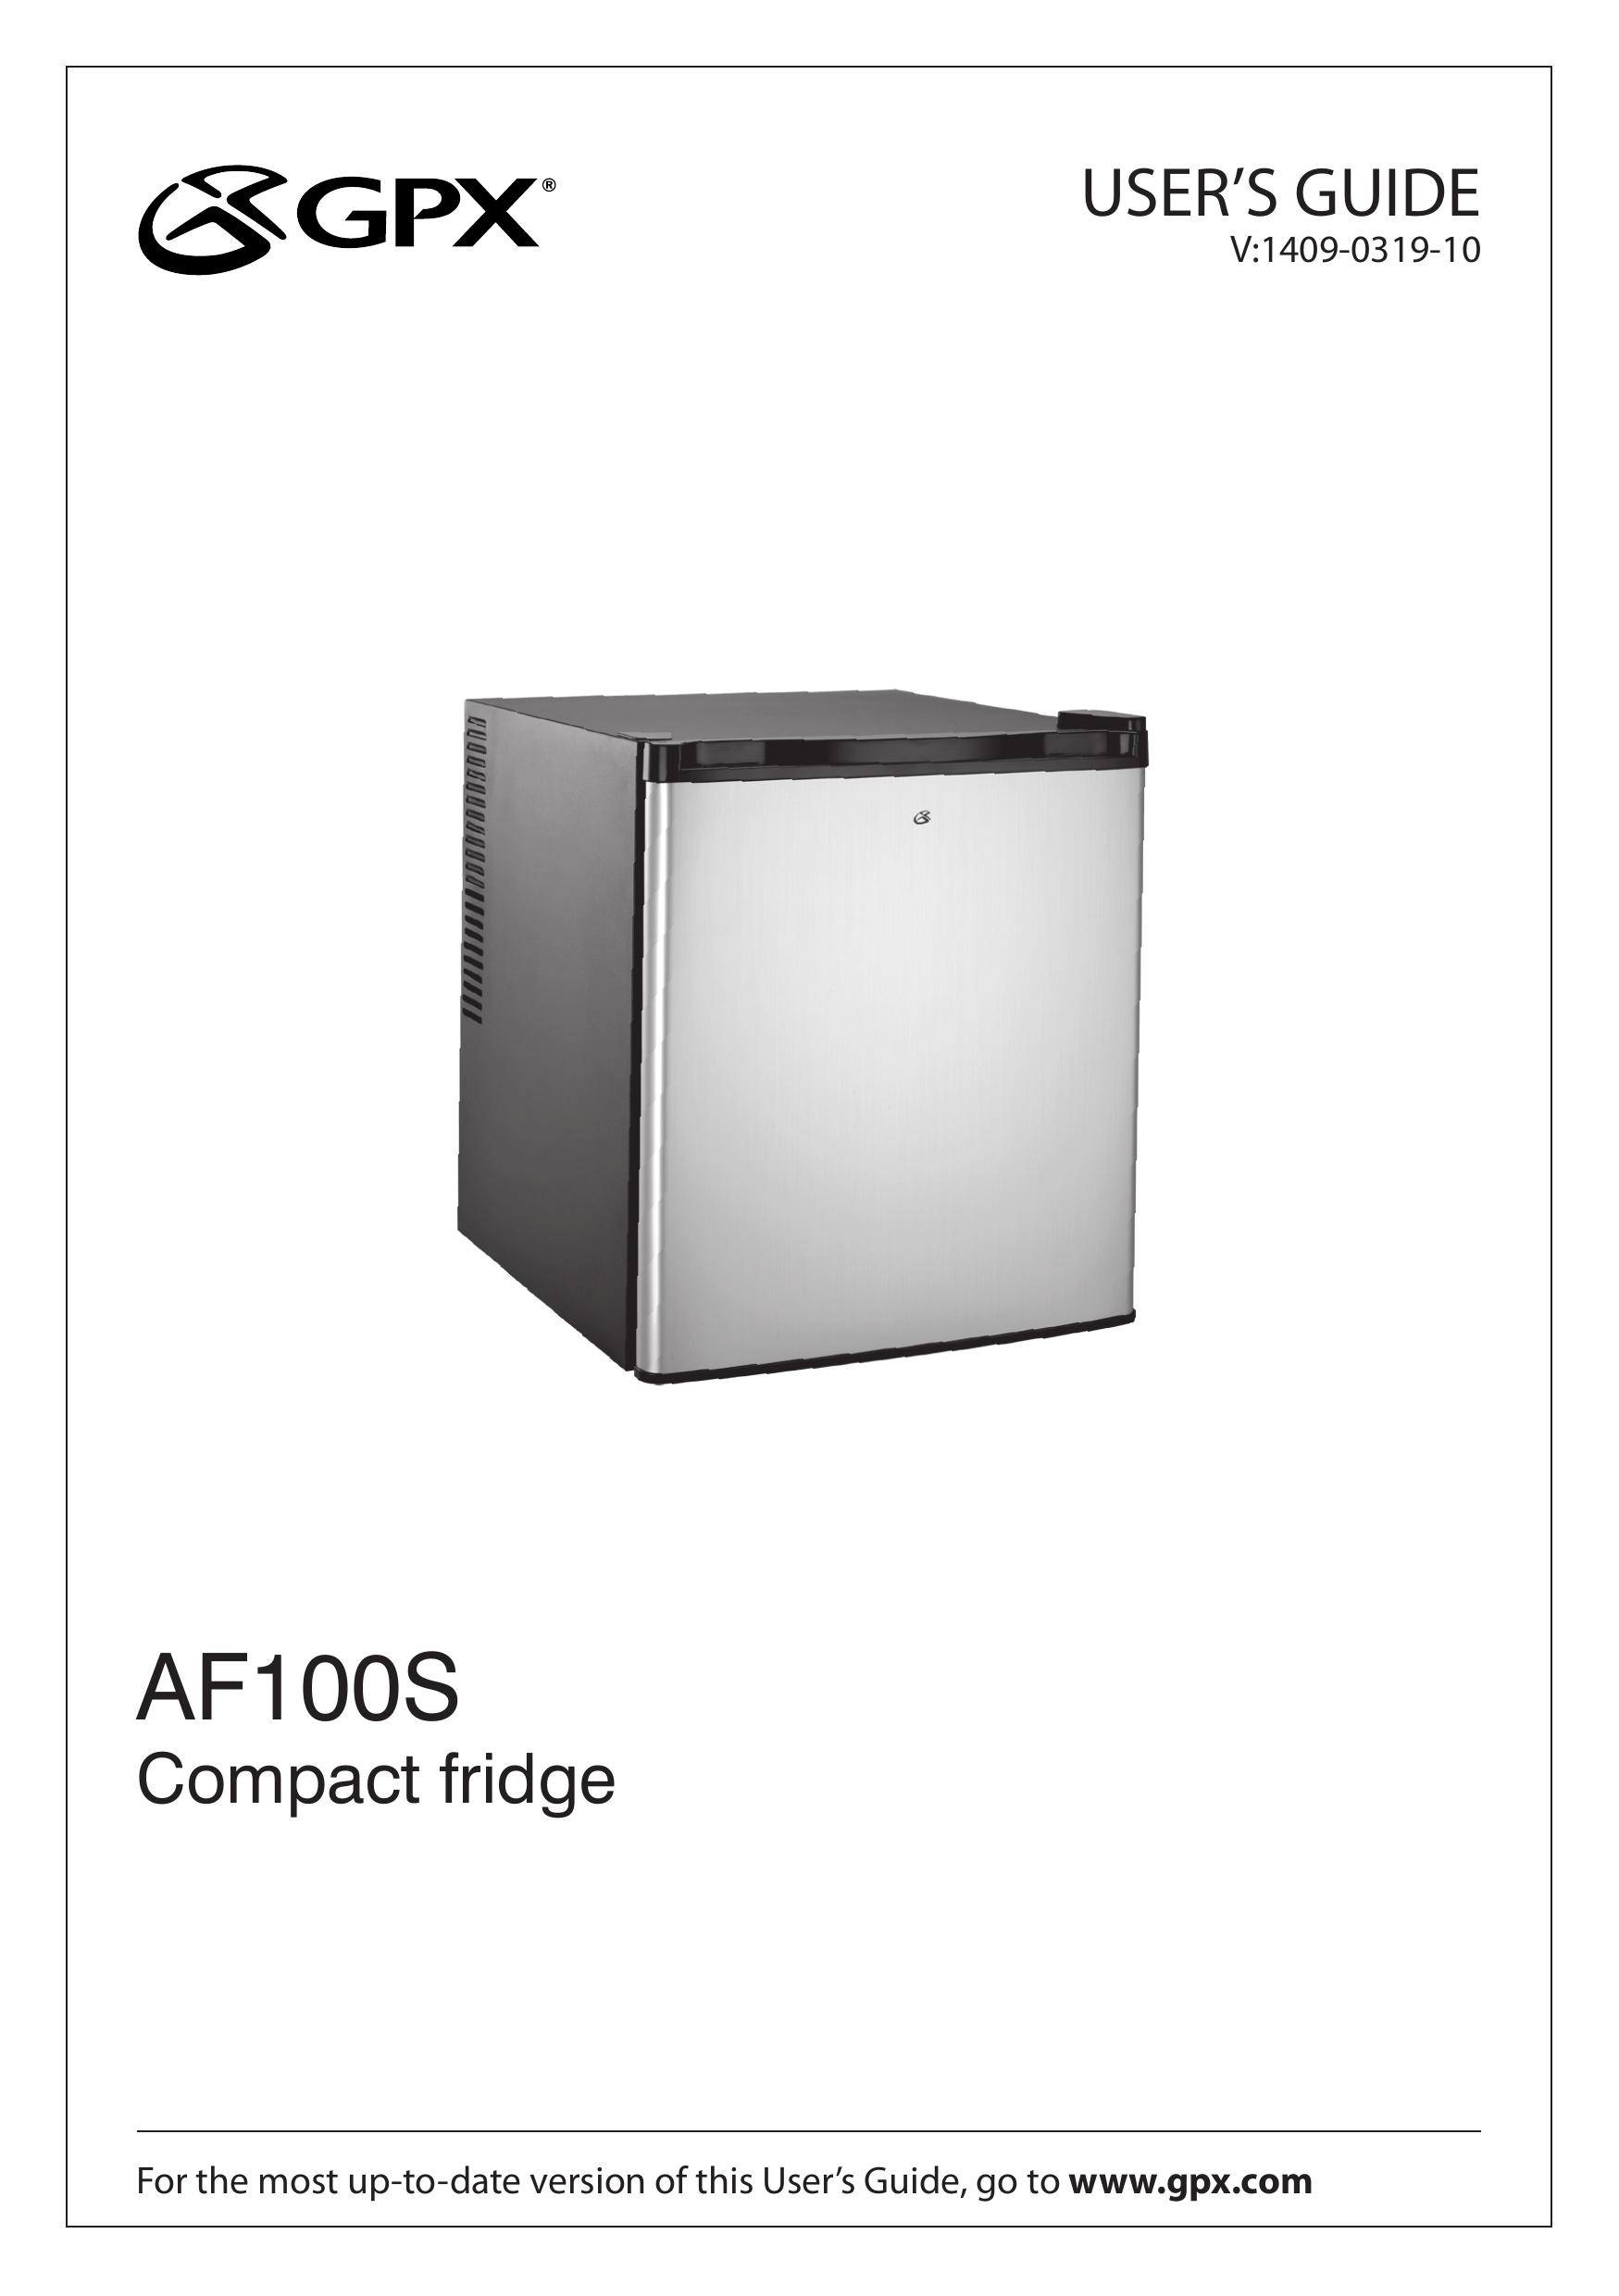 GPX AF100S Refrigerator User Manual